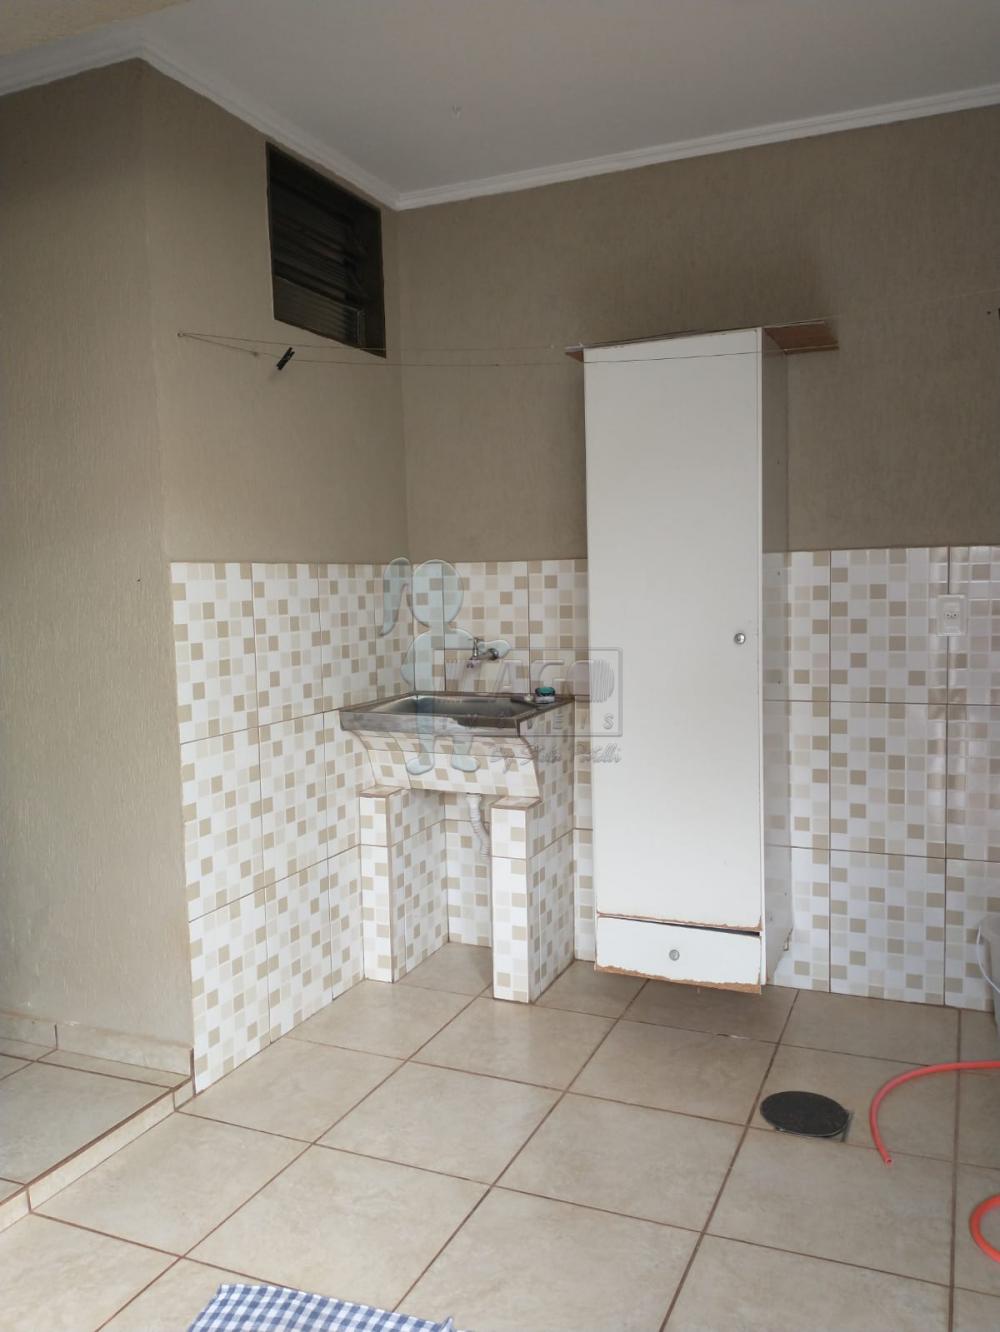 Comprar Casa / Padrão em Ribeirão Preto R$ 375.000,00 - Foto 11